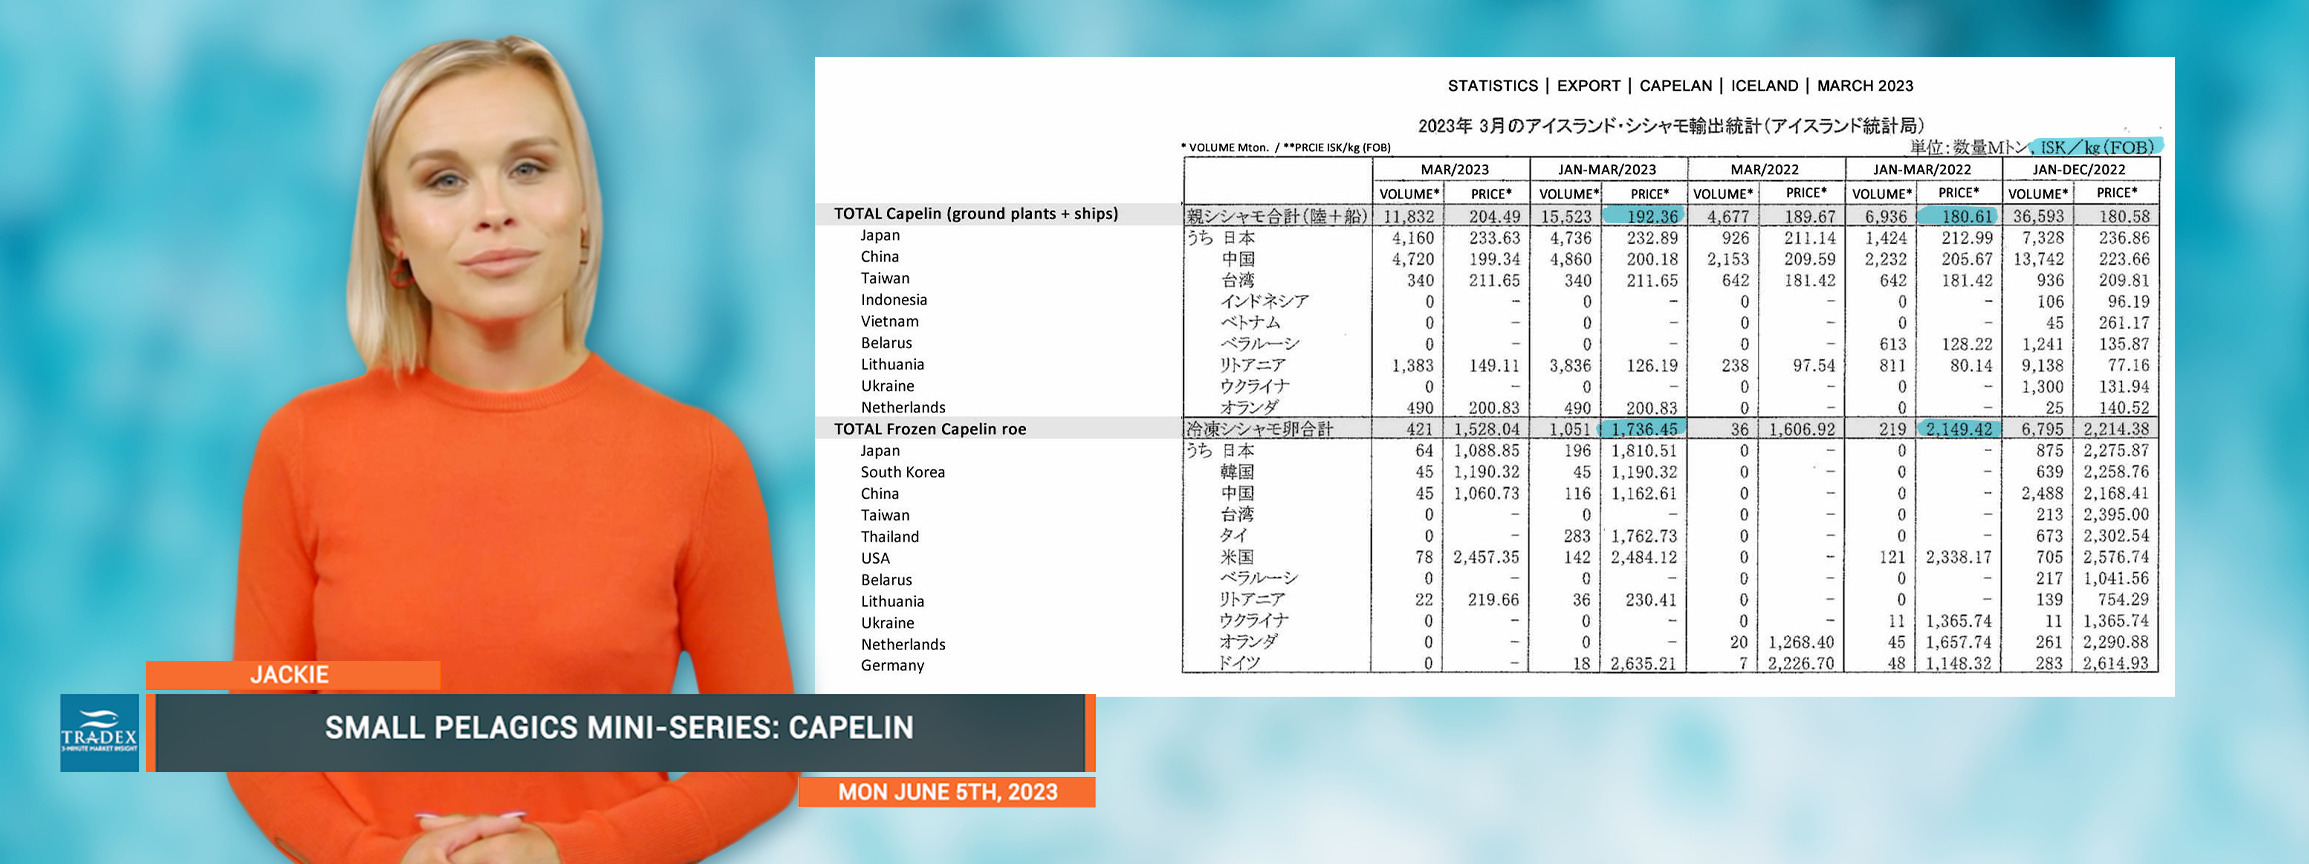 Statistics Export Capelin Iceland 2023